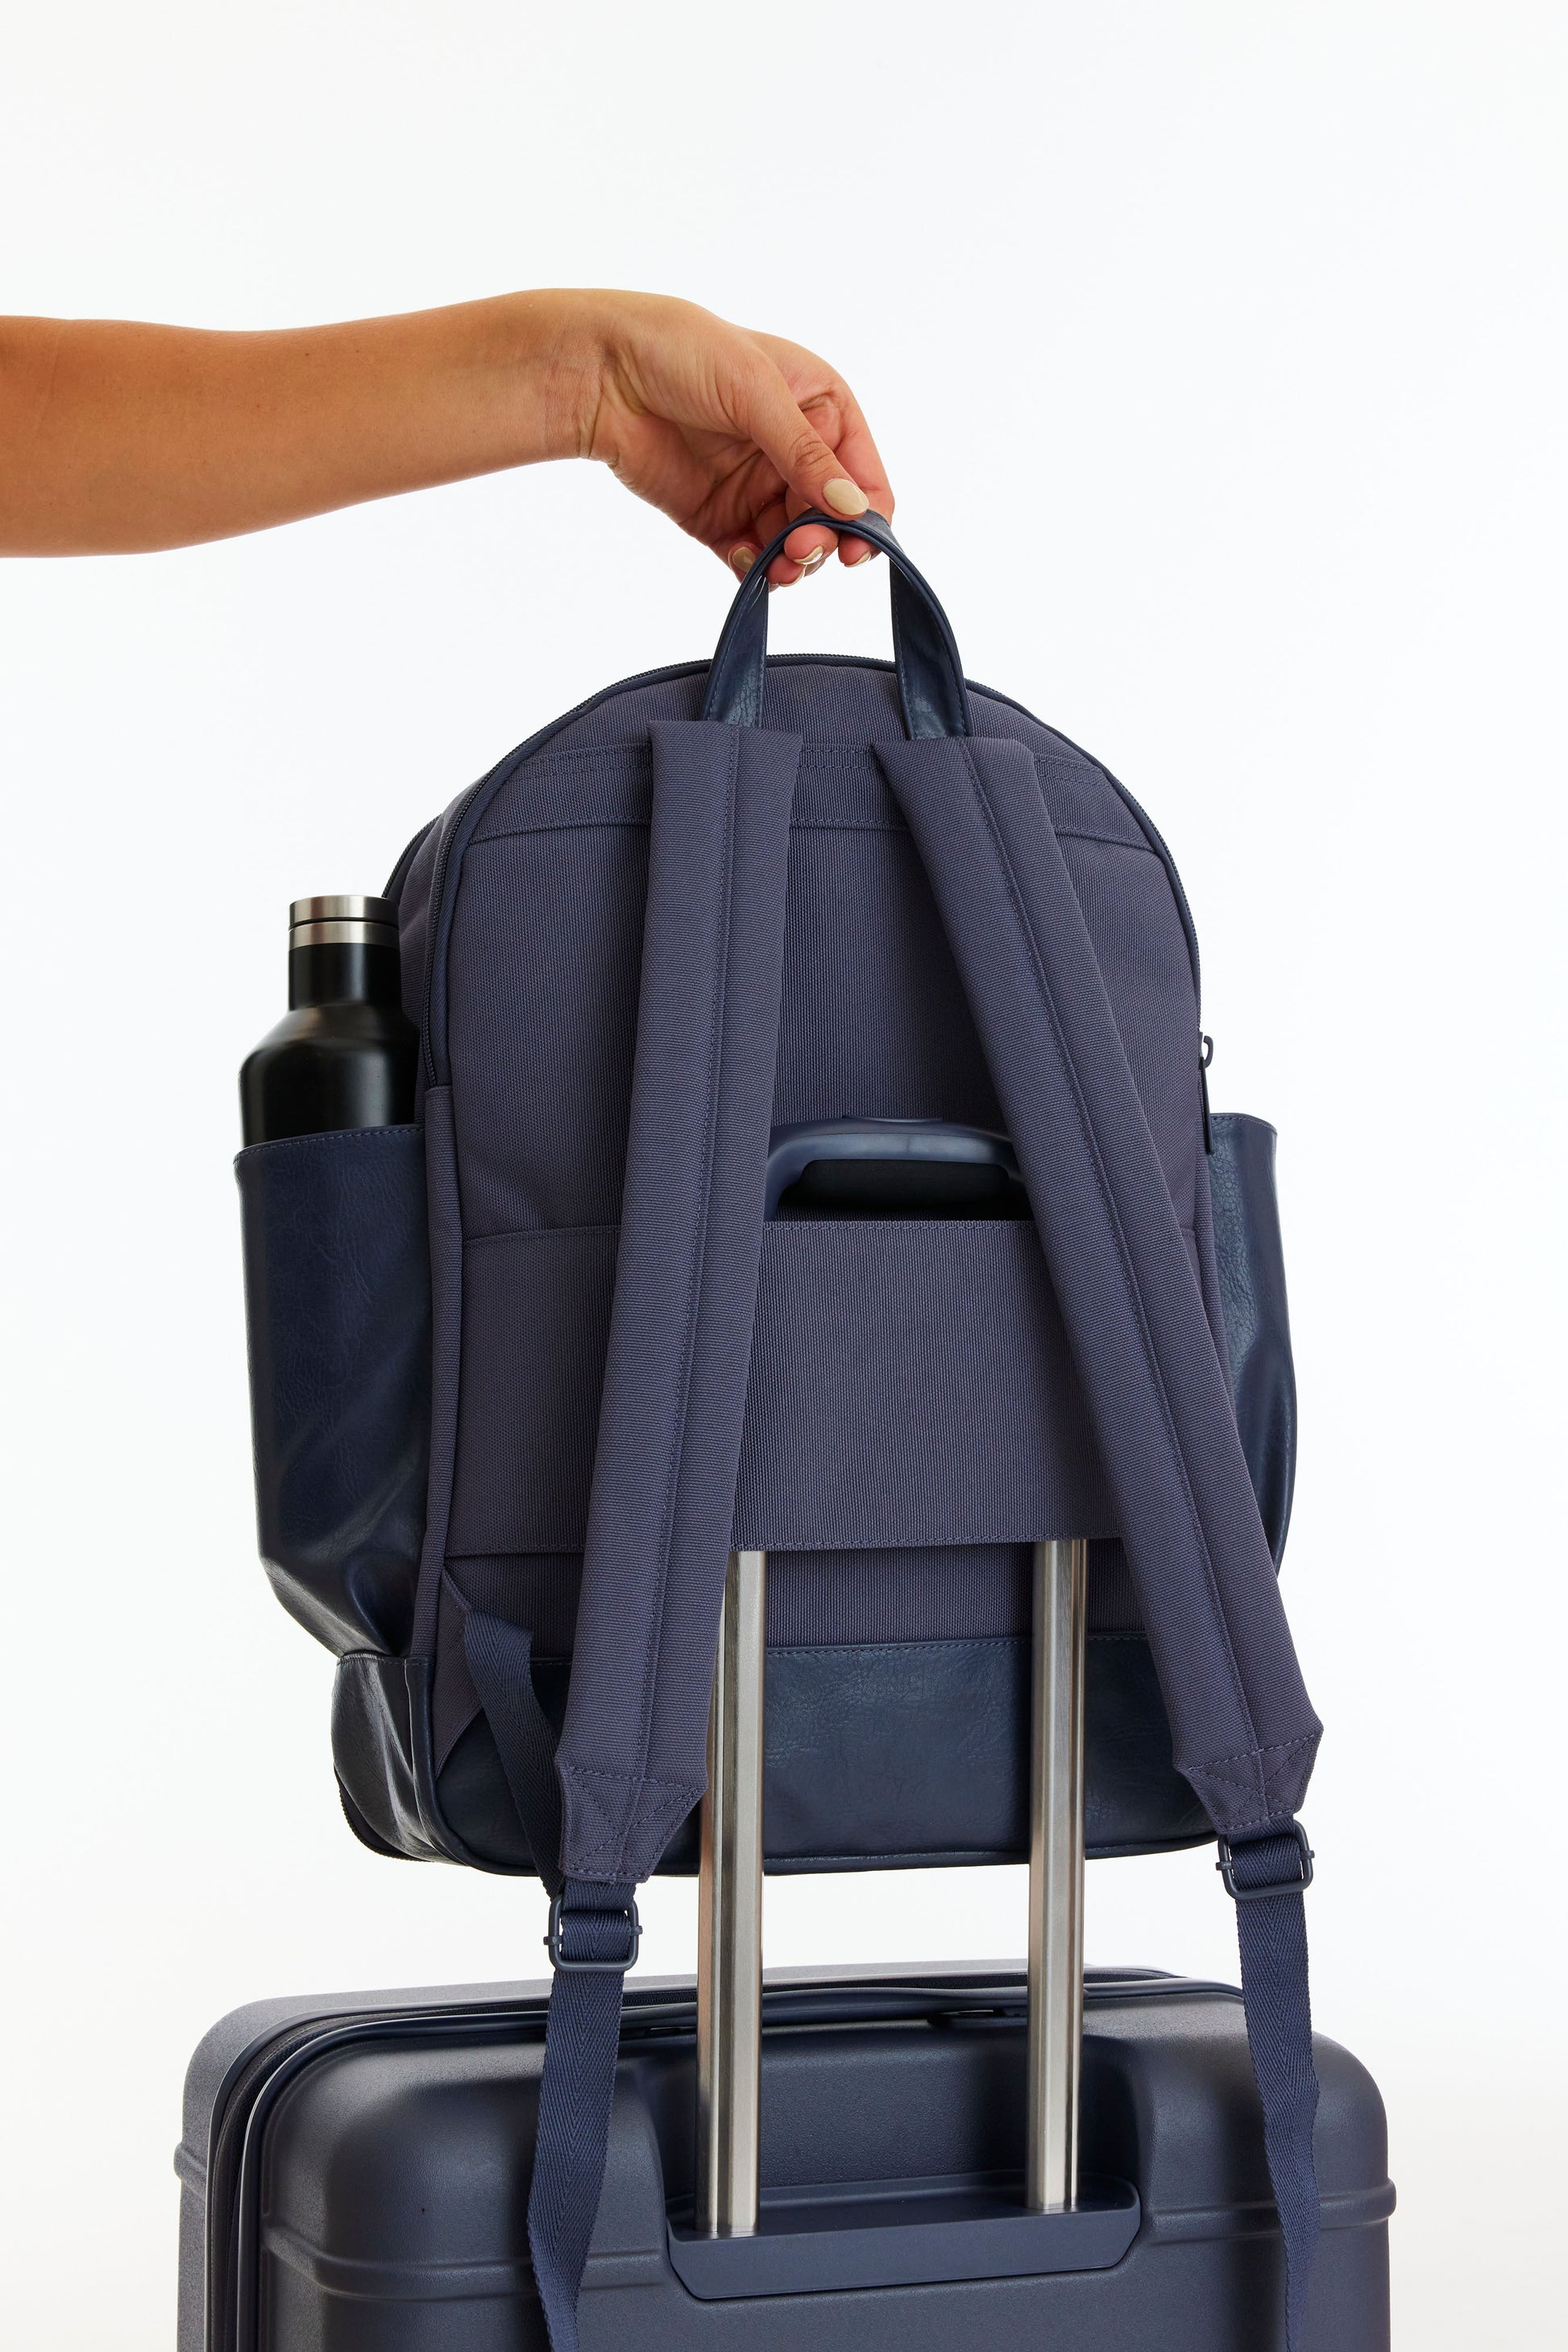 Anello CROSS BOTTLE Base Laptop Travel Backpack Unisex Large Size Big  Capacity